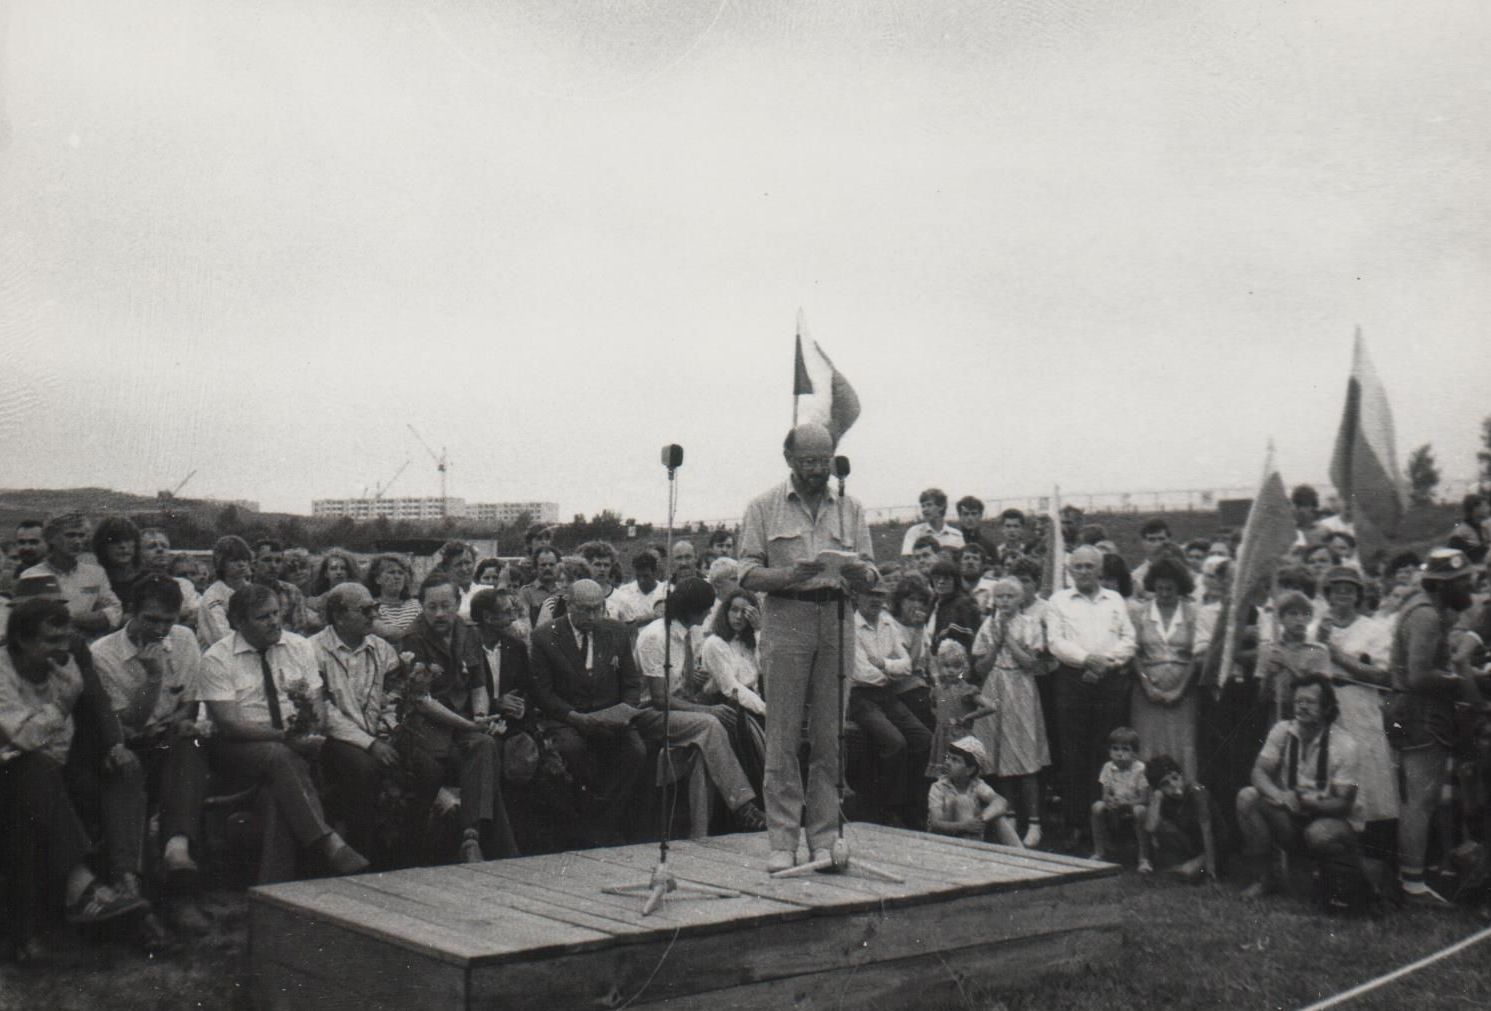 1988 m. Jonavoje buvo surengtas pirmasis Sąjūdžio mitingas. Kalba – G. Ilgūnas. 1988 m. liepos 25 d.